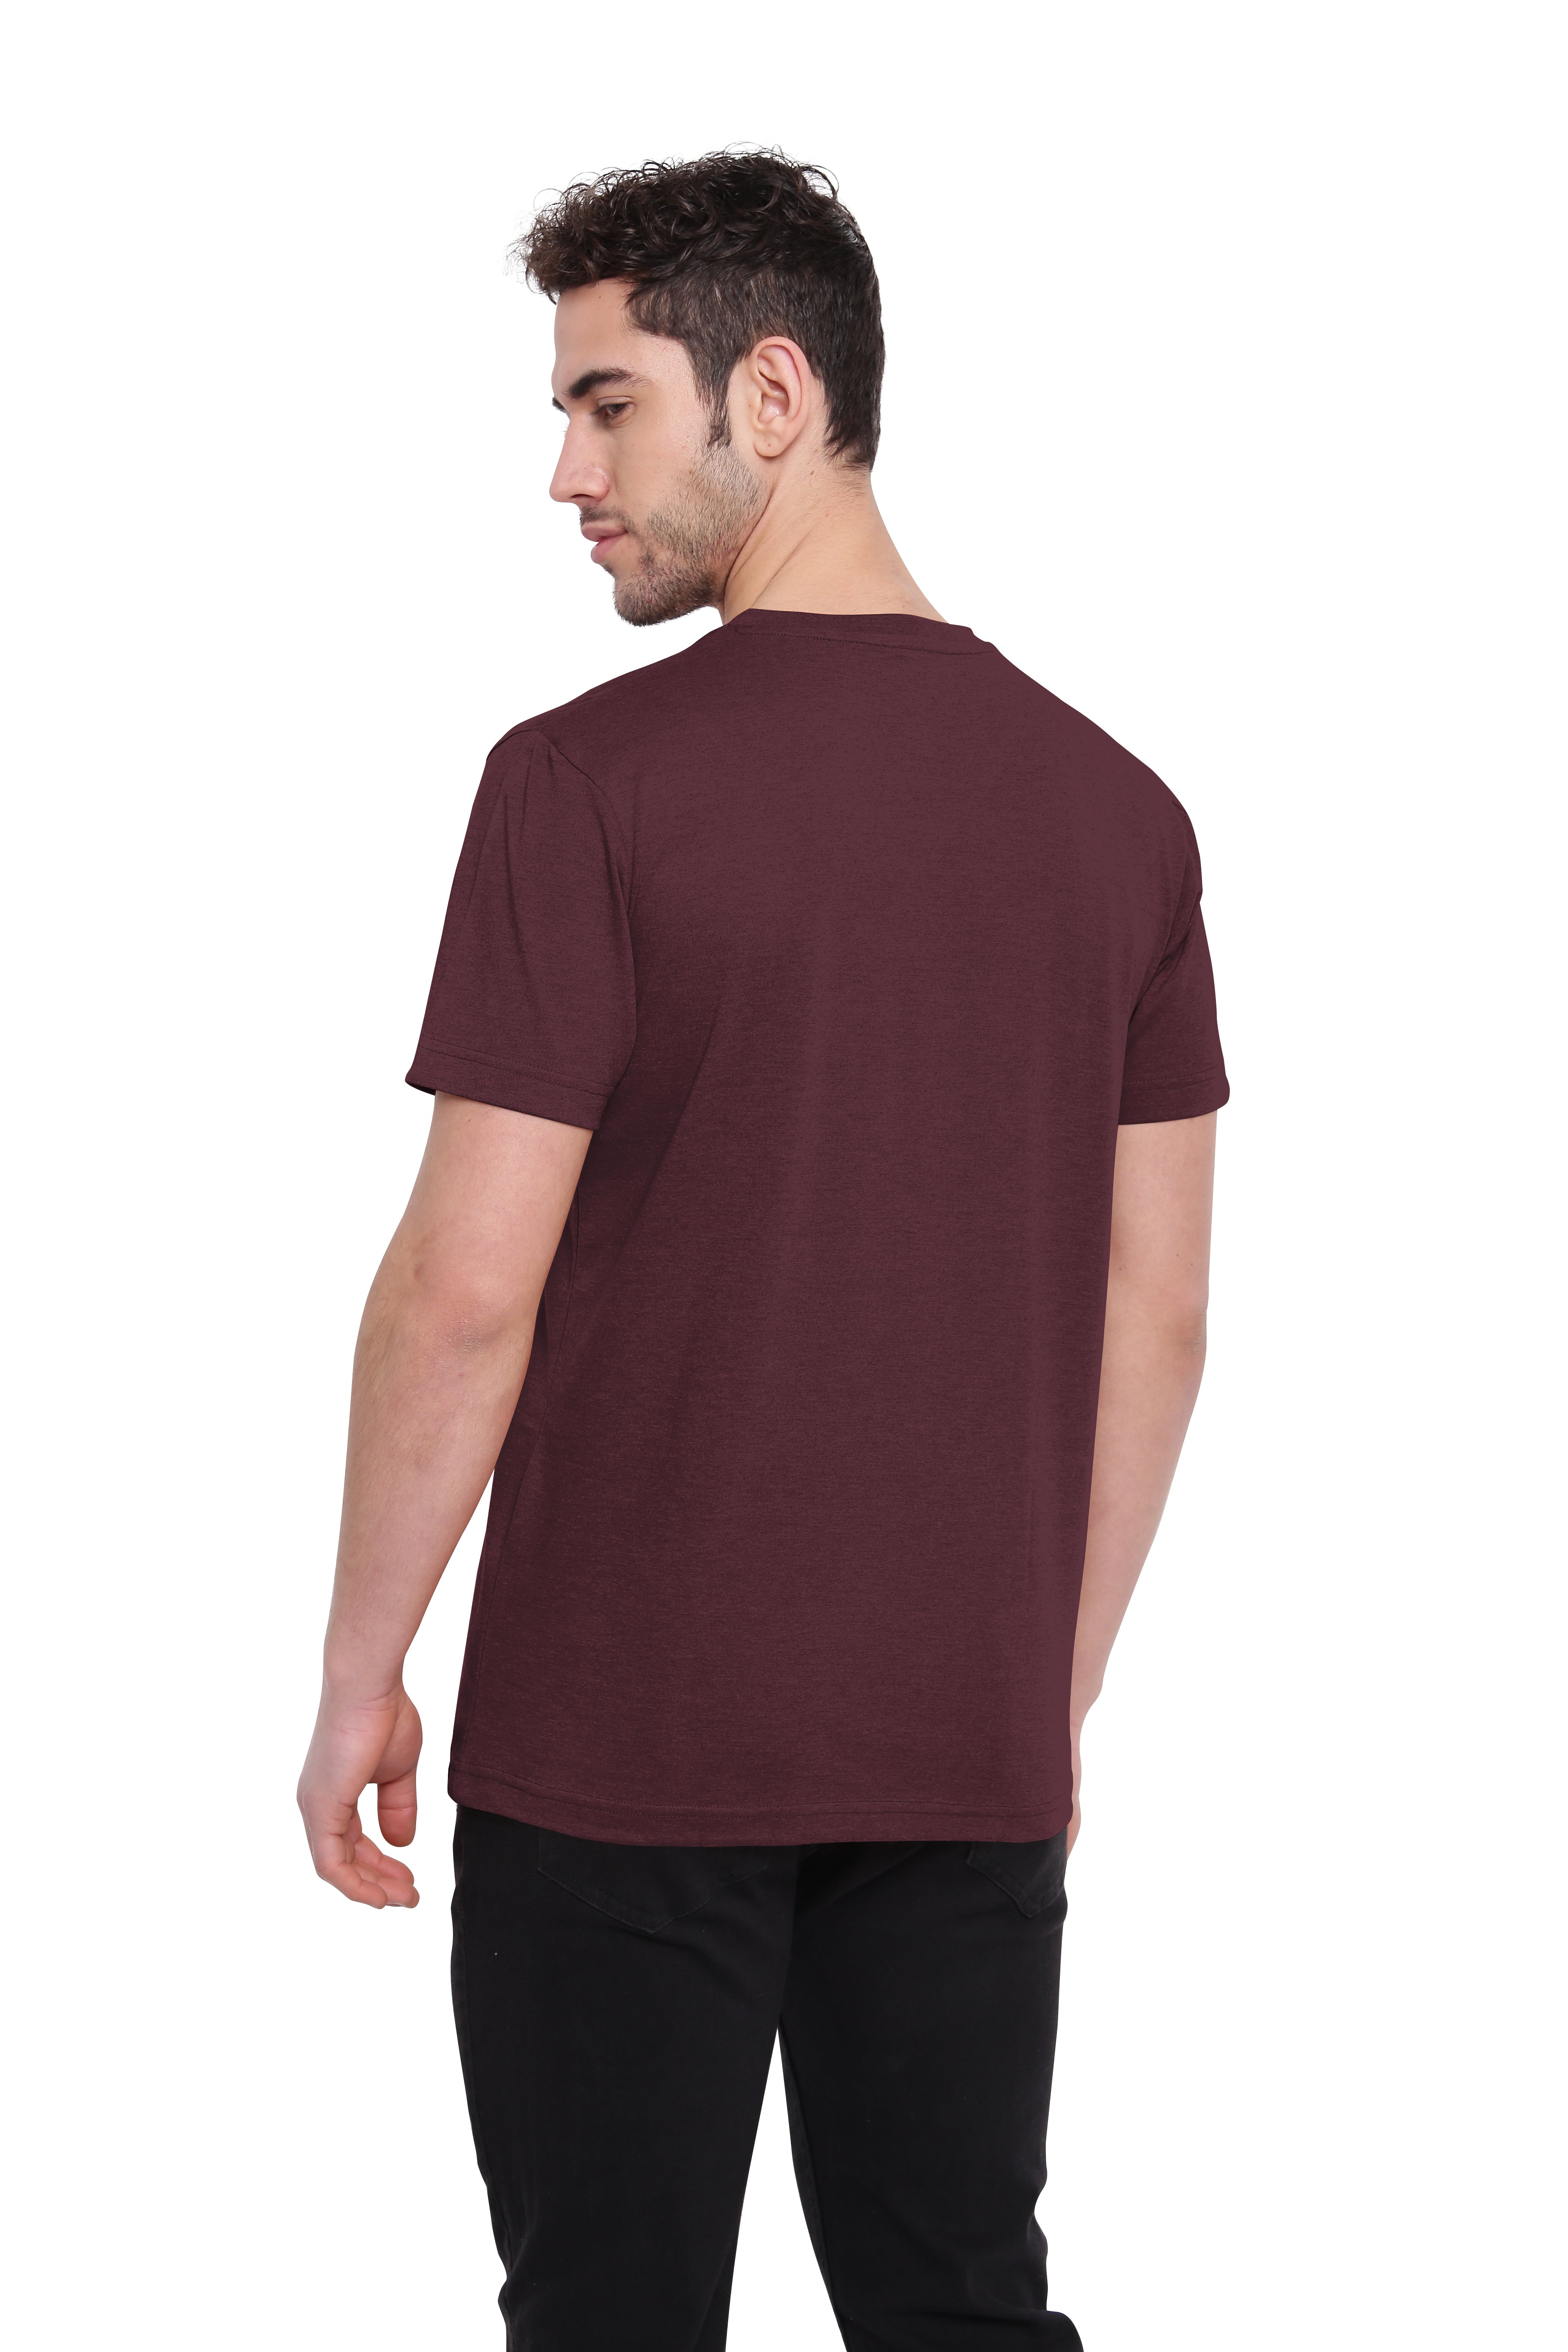 Poomer T-Shirt Solid V Neck - Burgundy Red